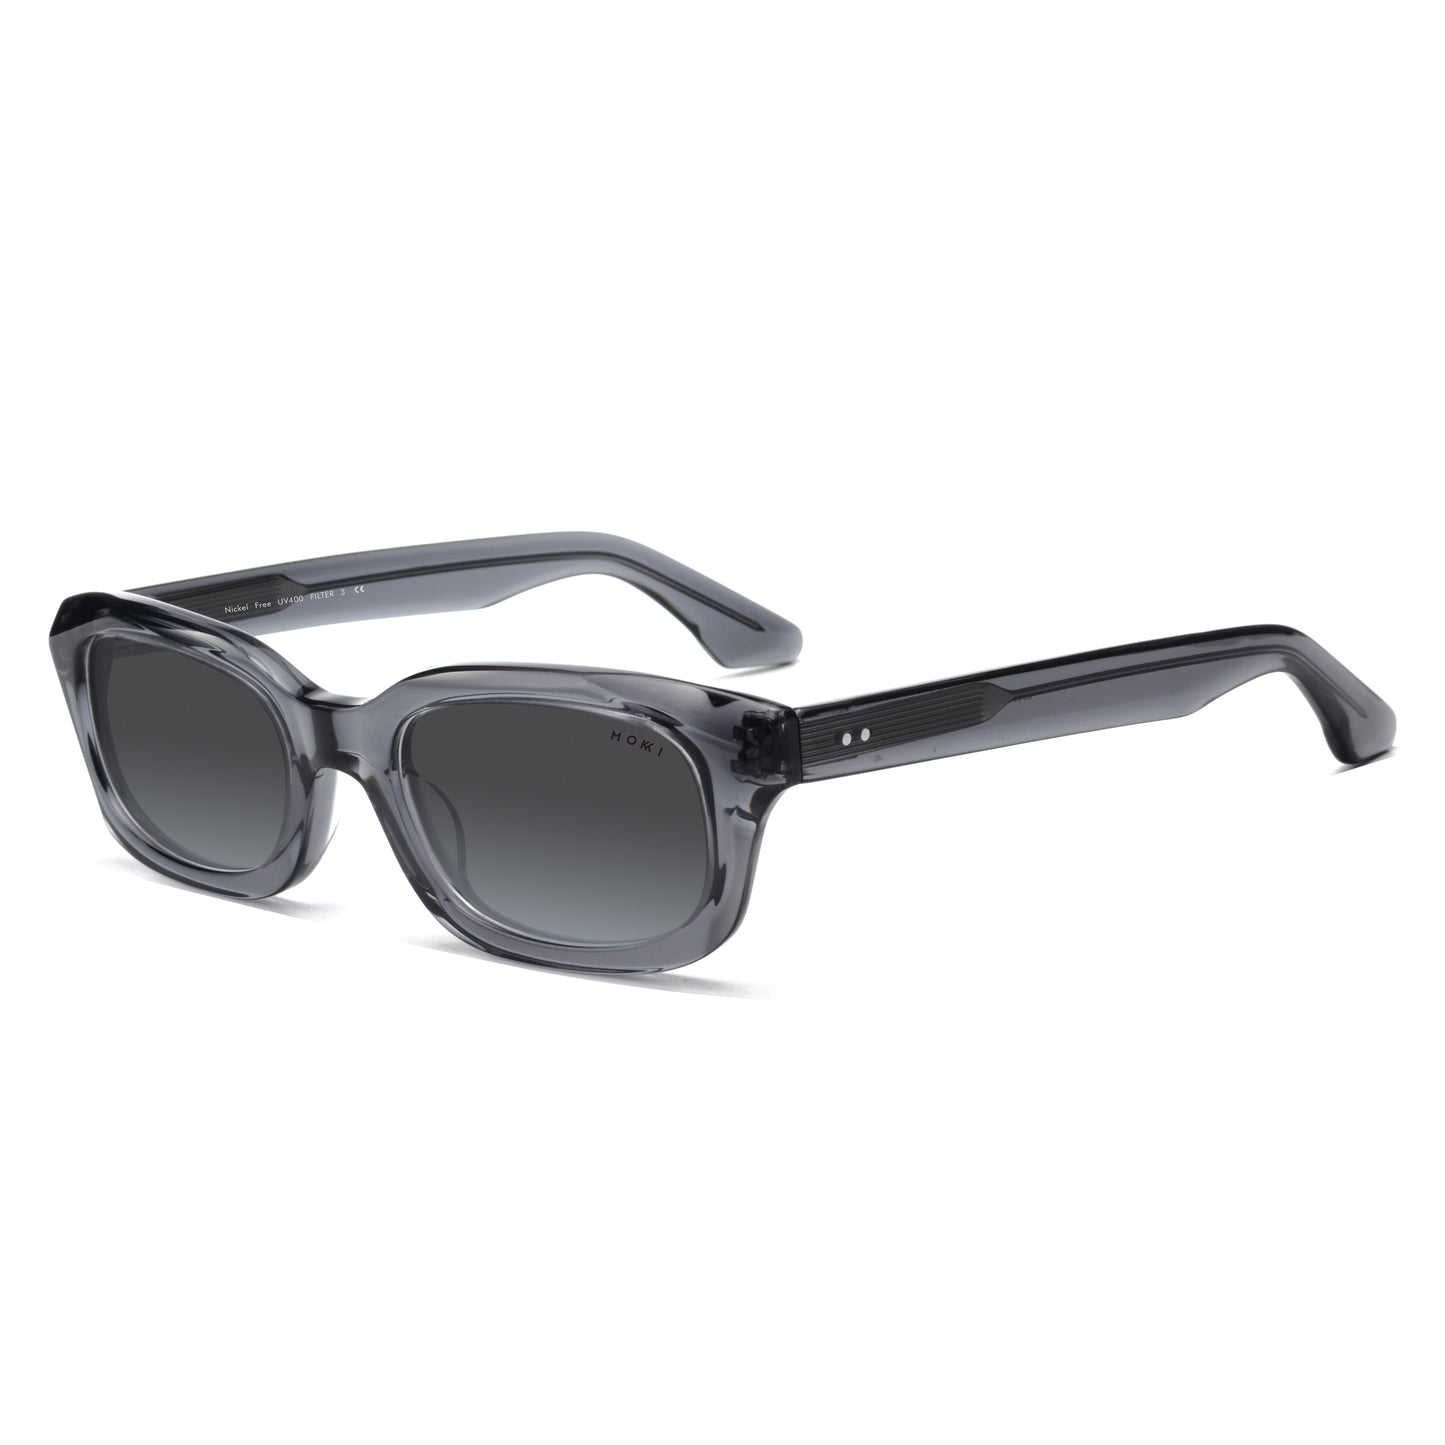 Mokki Slim Ovals sunglasses in Transparent